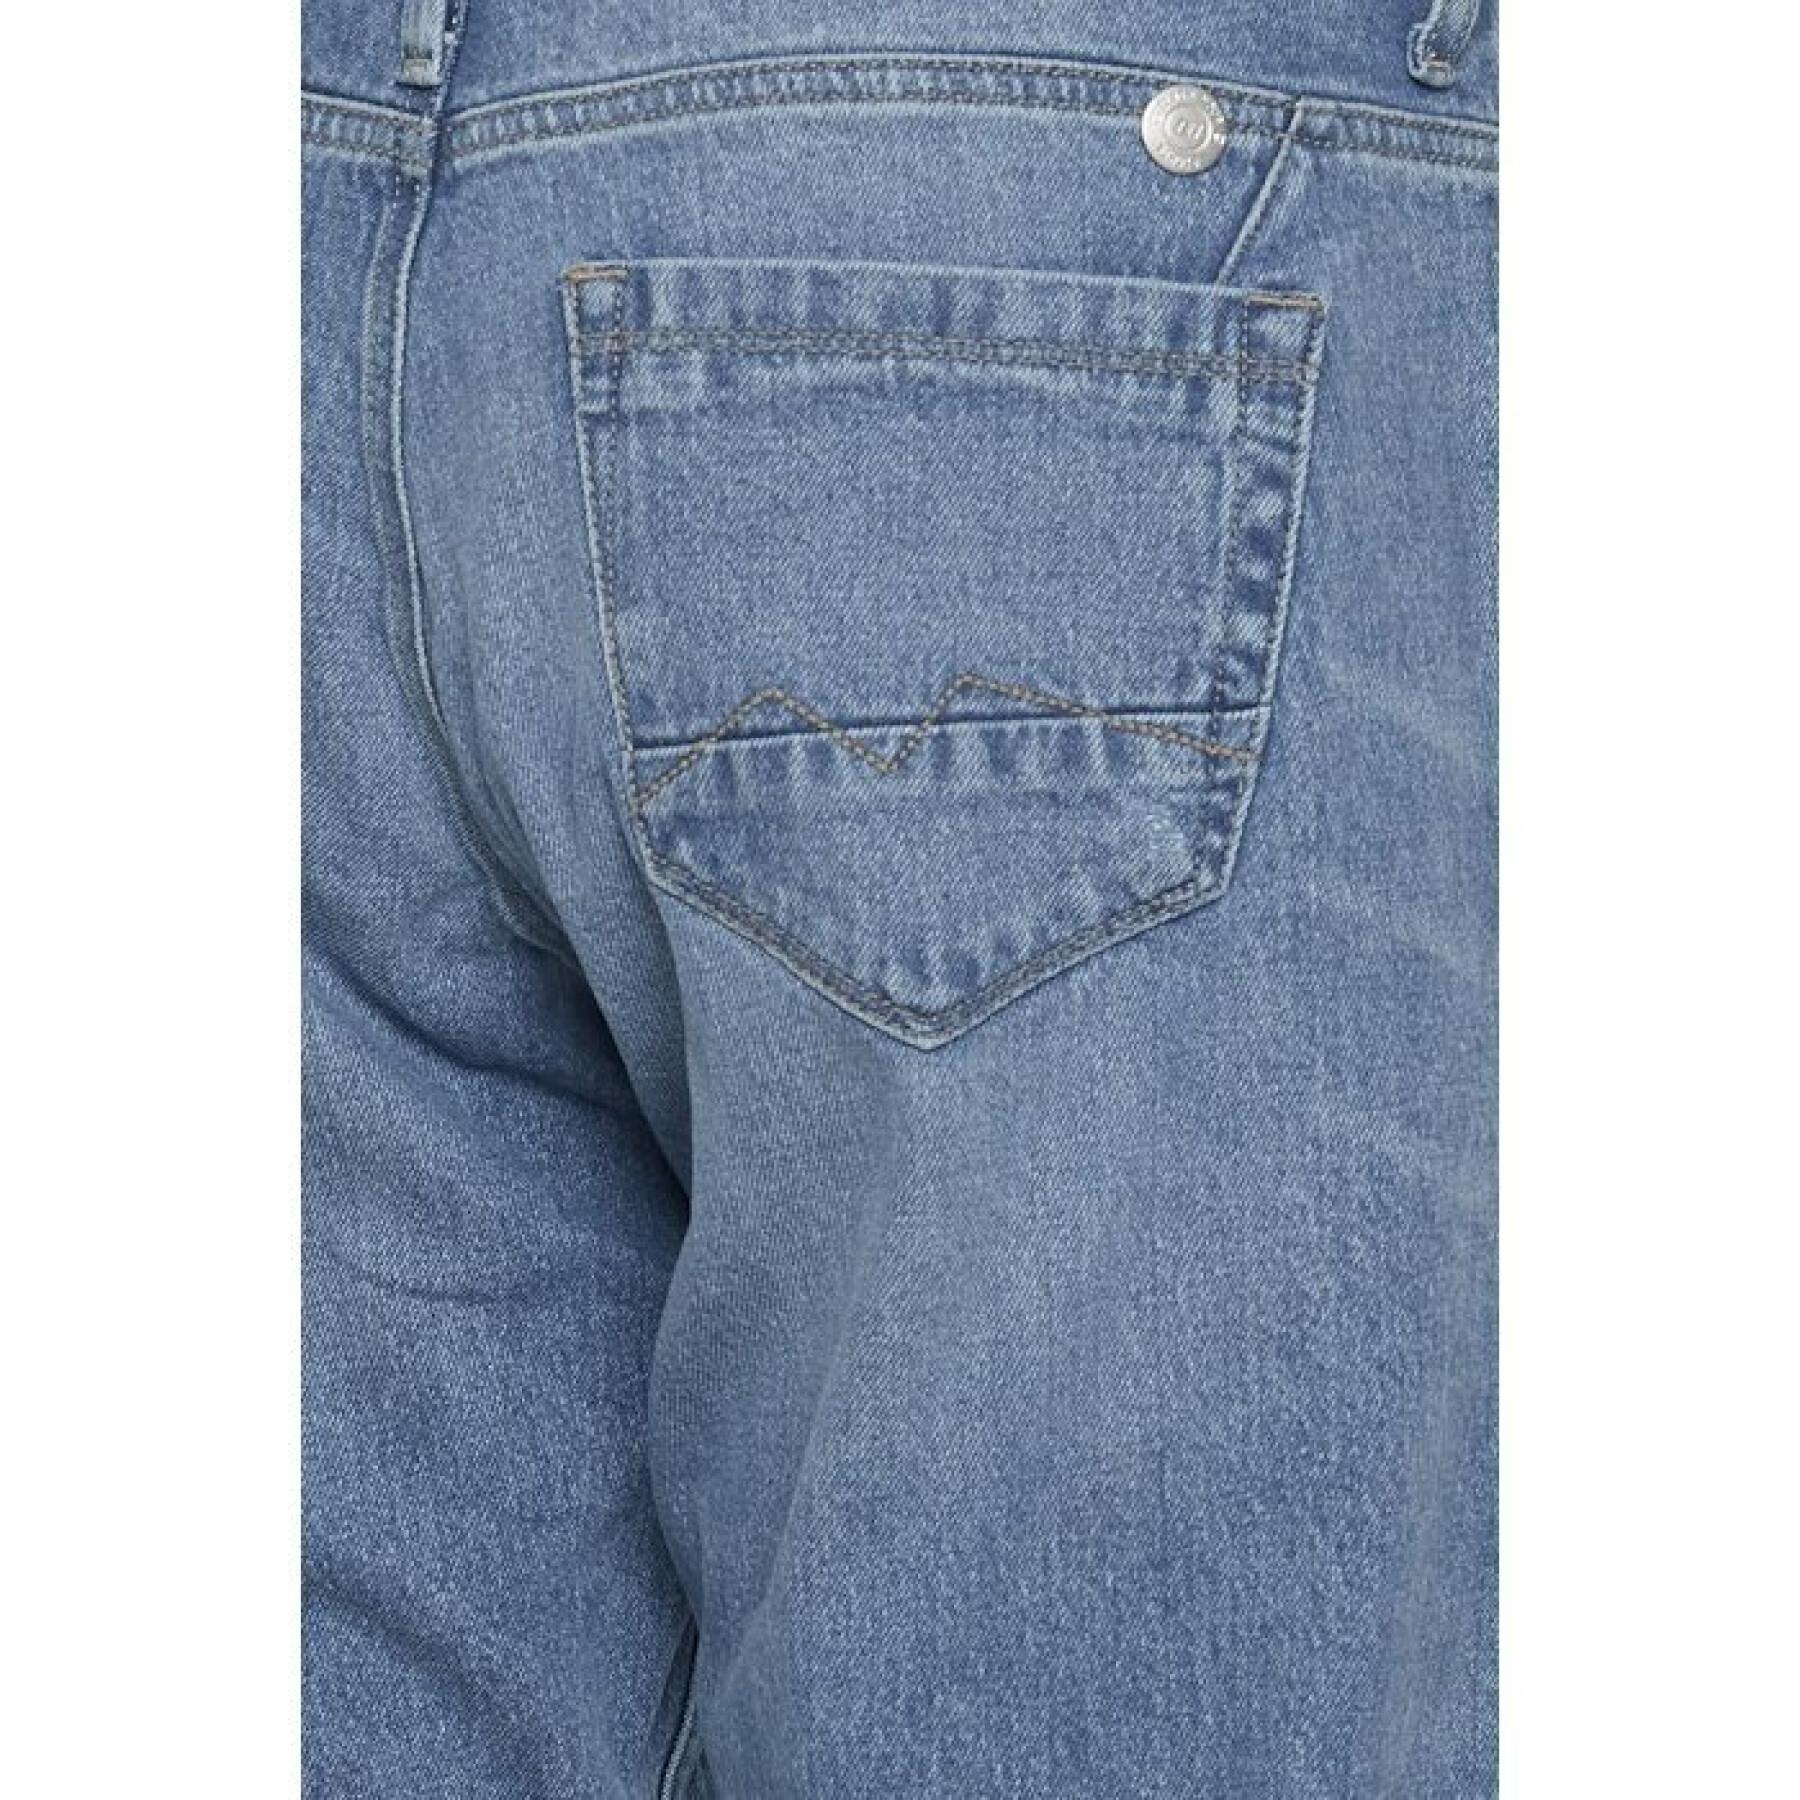 Lässig geschnittene Jeans für Frauen Blend